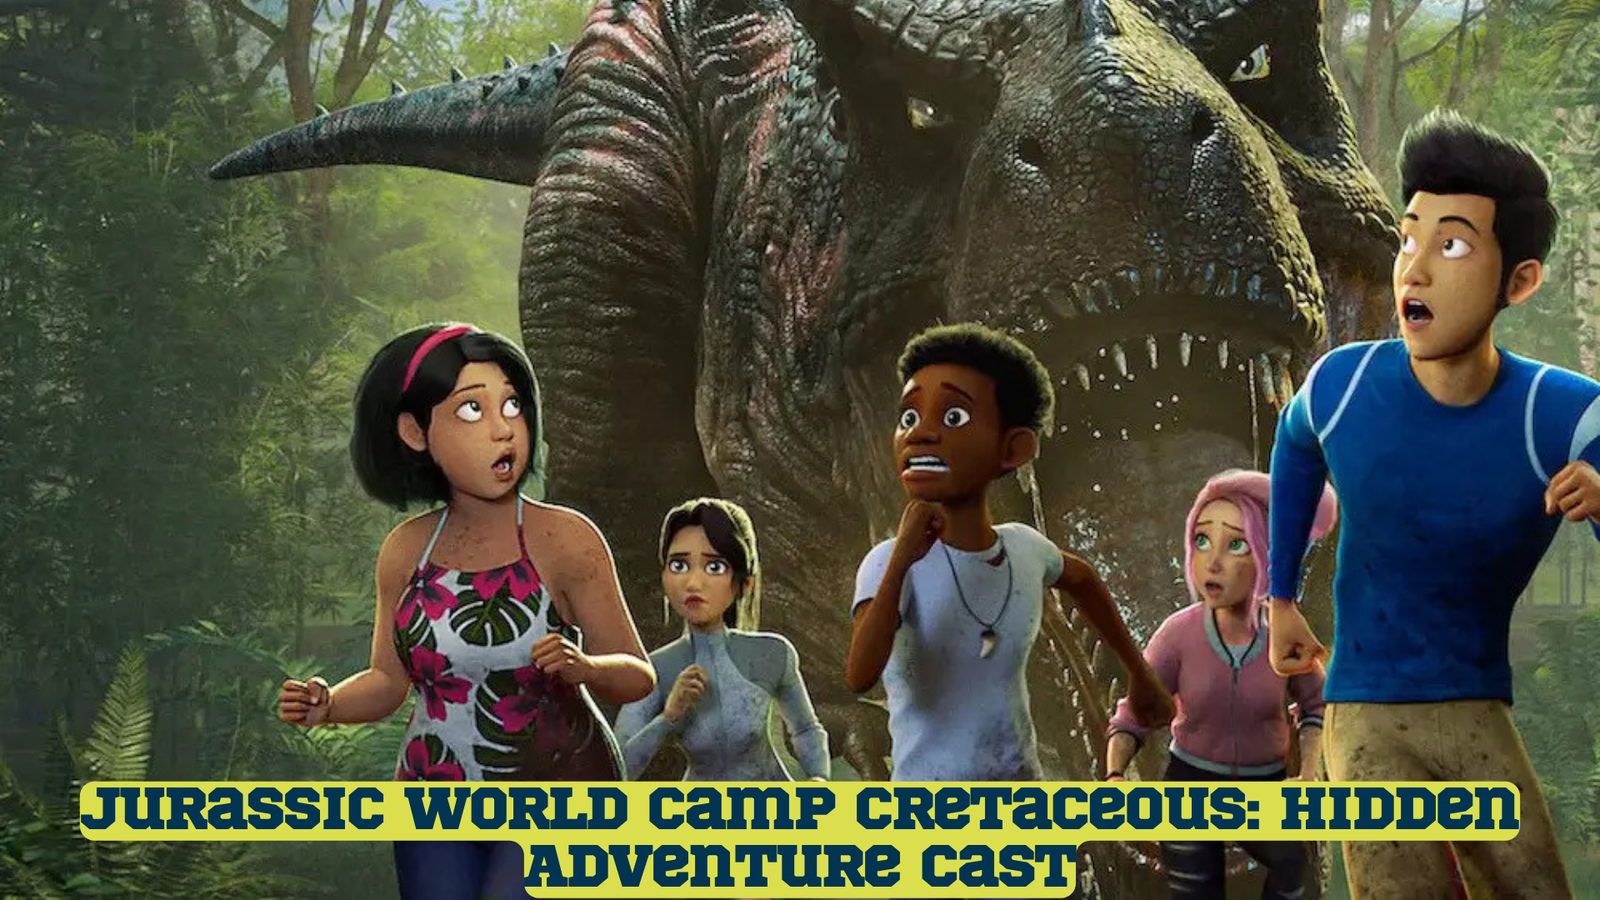 Jurassic World Camp Cretaceous: Hidden Adventure Cast